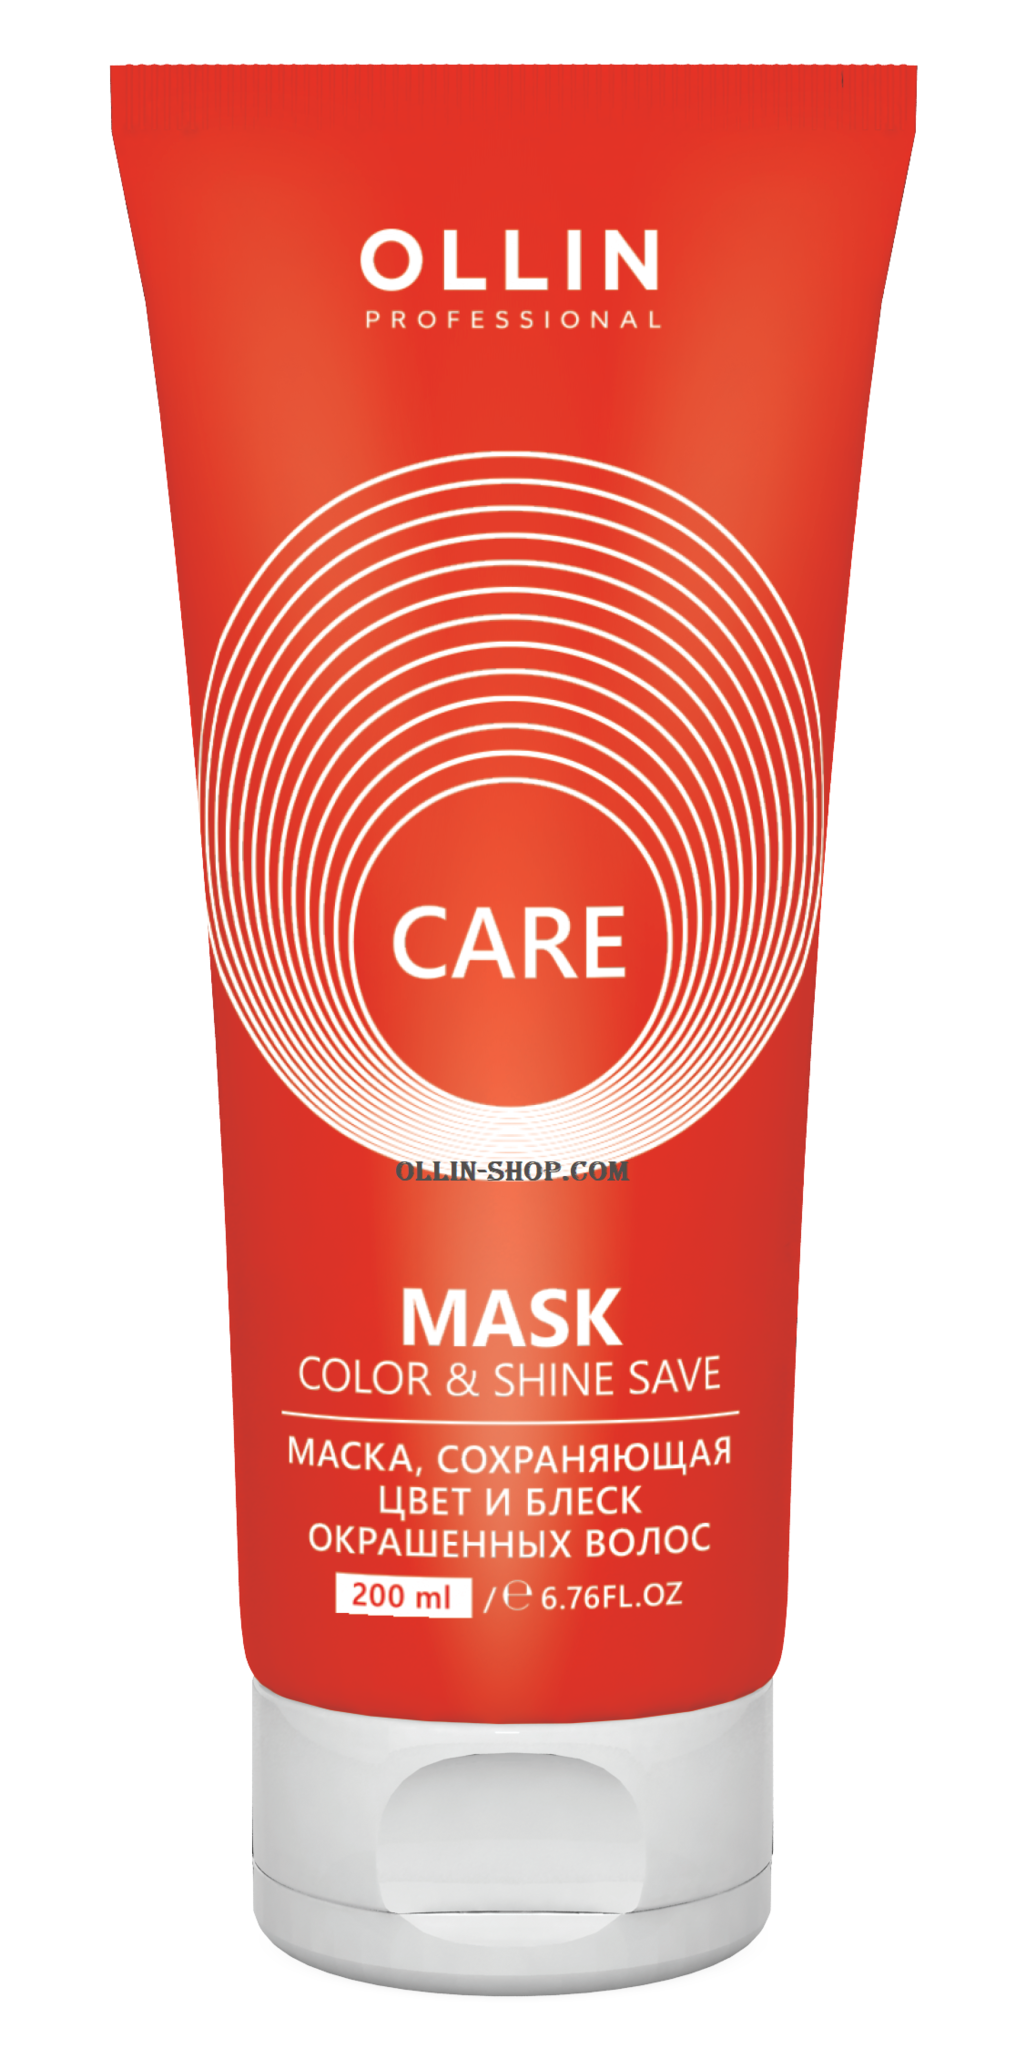 OLLIN CARE Маска, сохраняющая цвет и блеск окрашенных волос / Color&Shine Save Mask